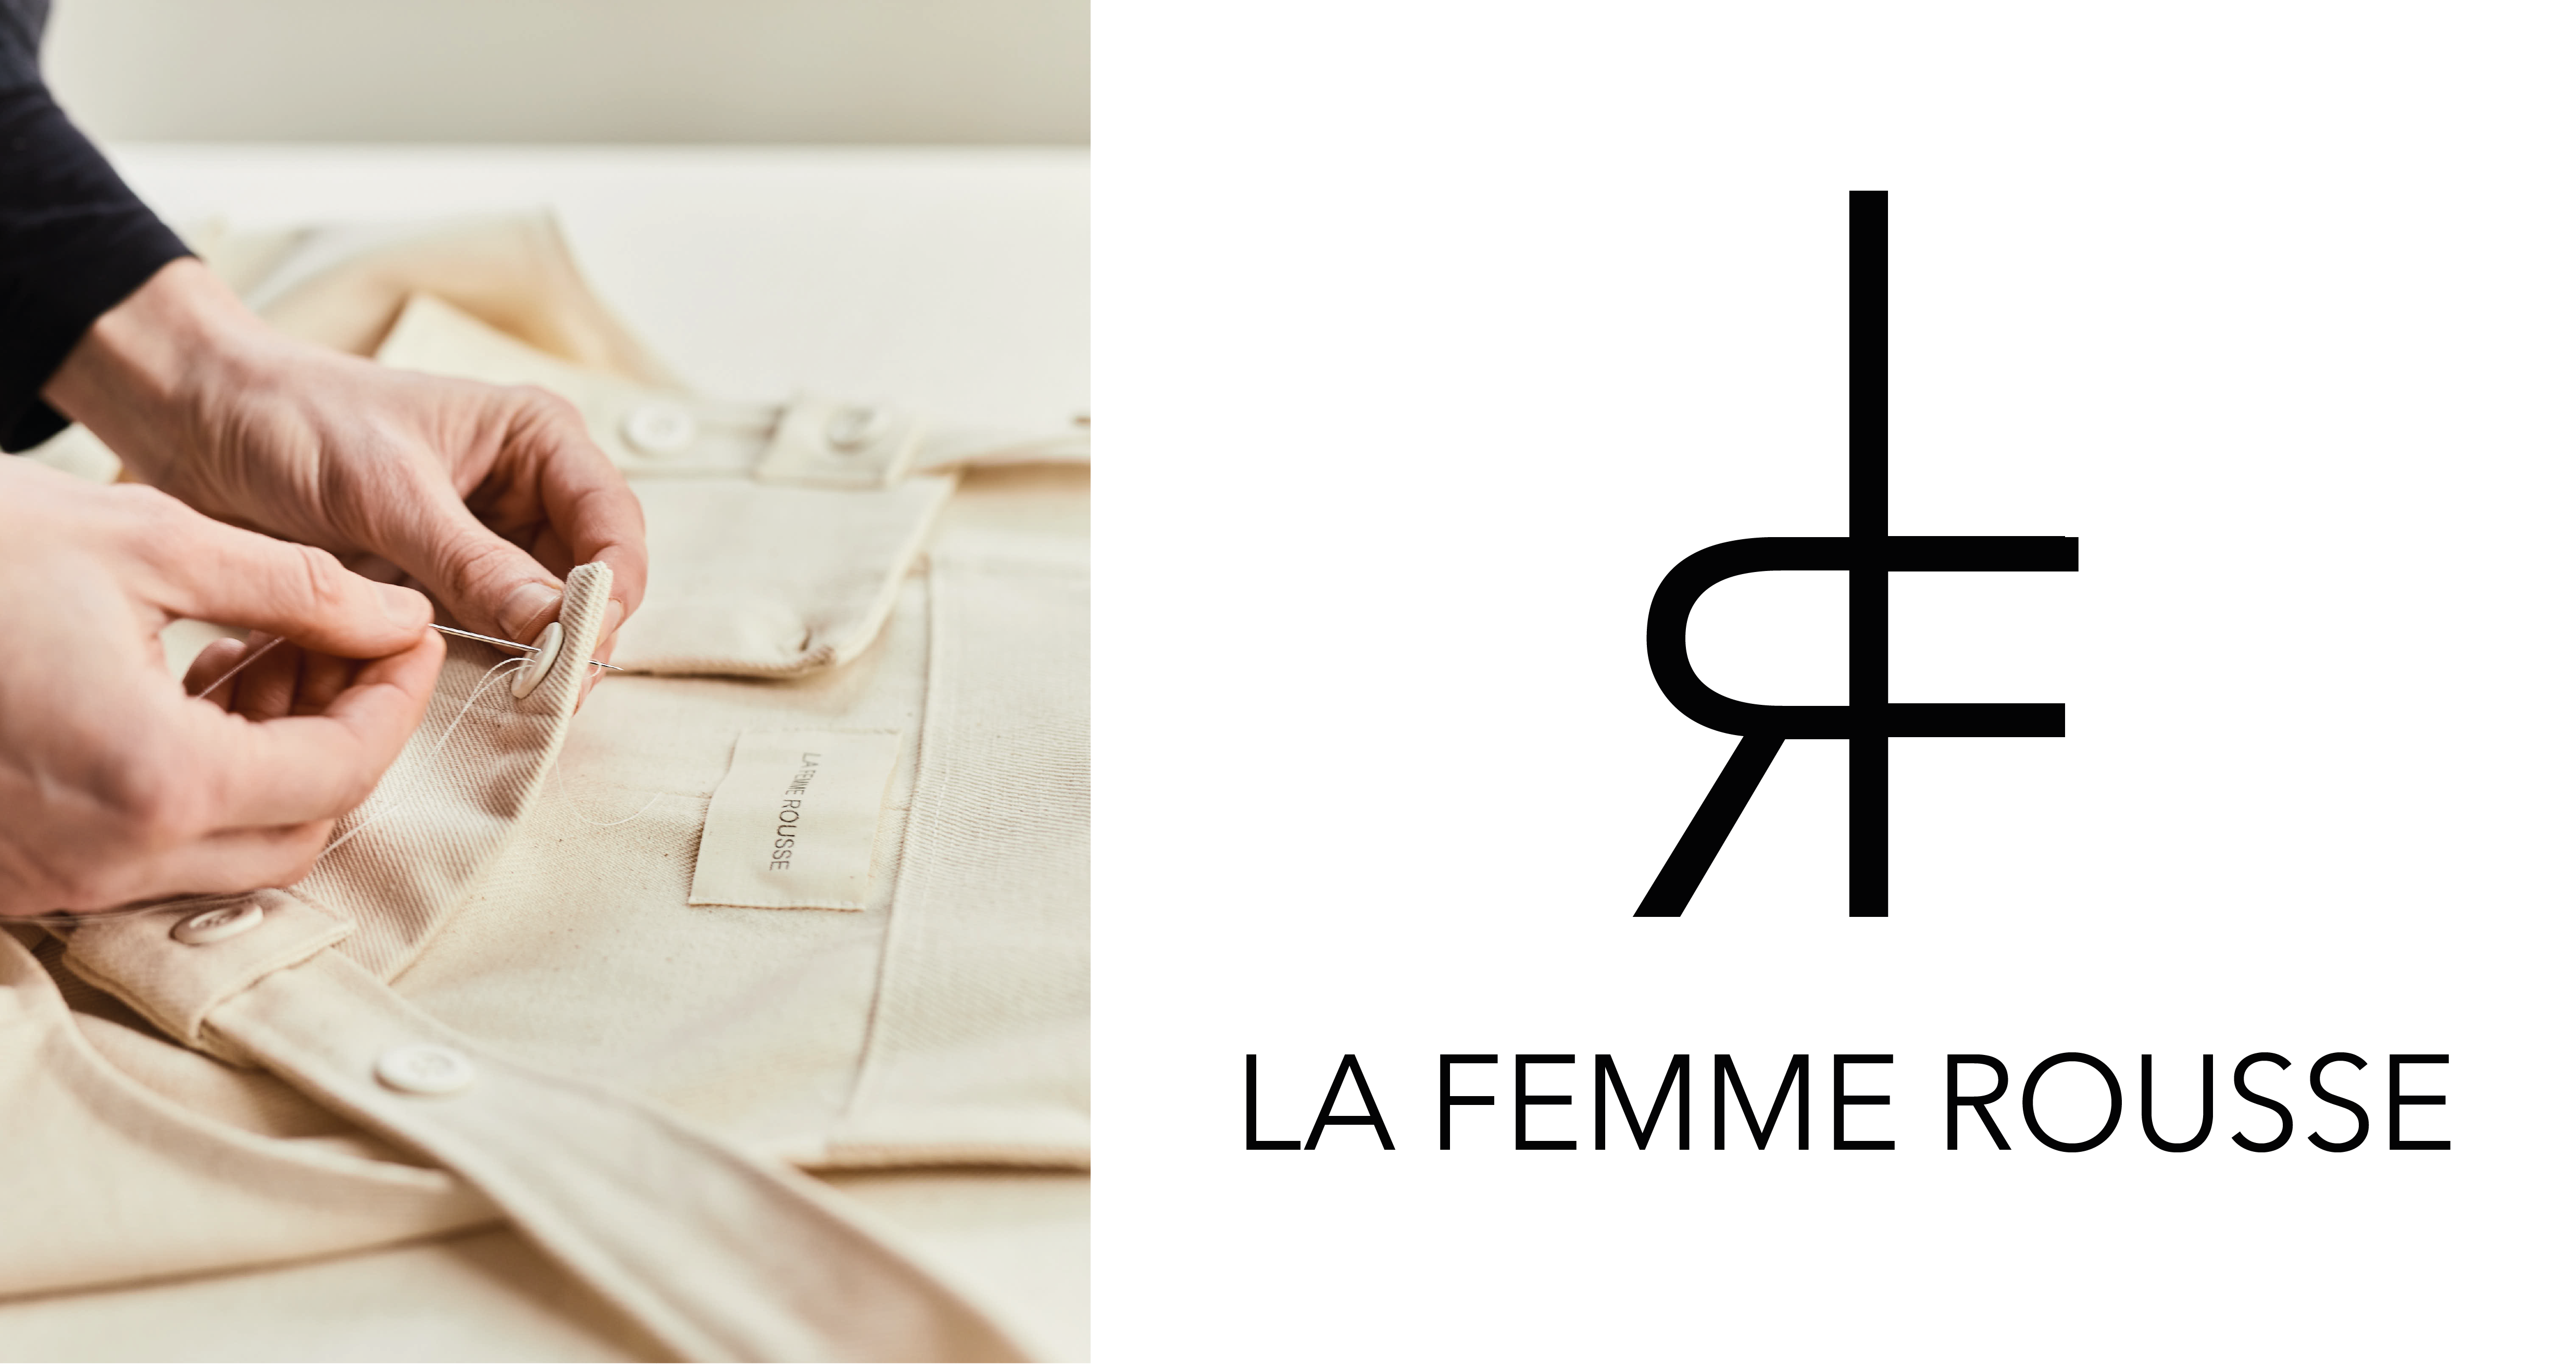 La Femme Rousse - Originalt design af materialer